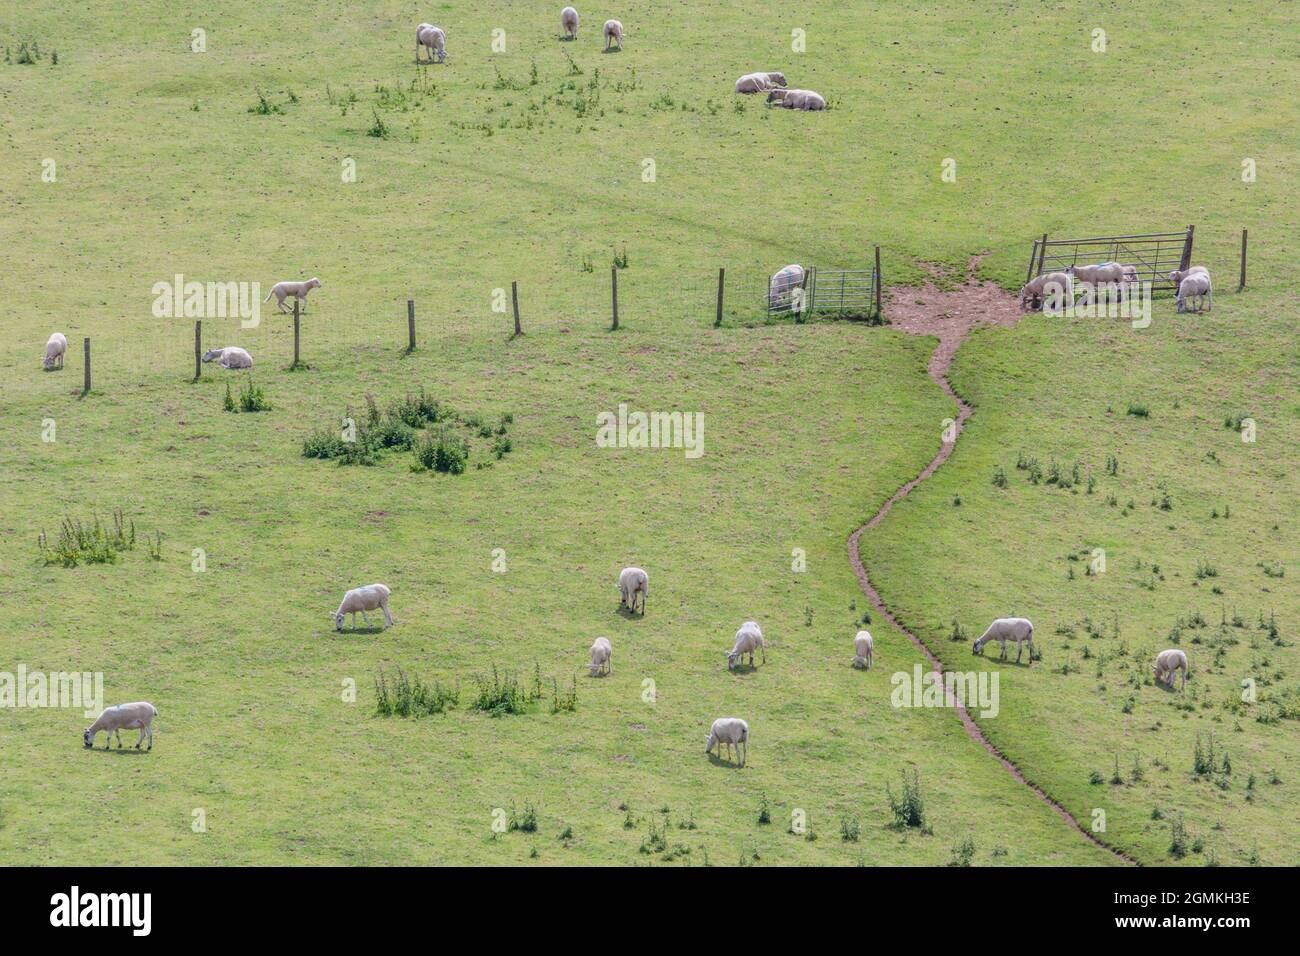 Aufnahme einer Bergweide (in Cornwall) mit Schafen, die Gras weiden. Metapher für Ernährungssicherheit / Anbau von Lebensmitteln, Tierhaltung Großbritannien, Tierschutz. Stockfoto